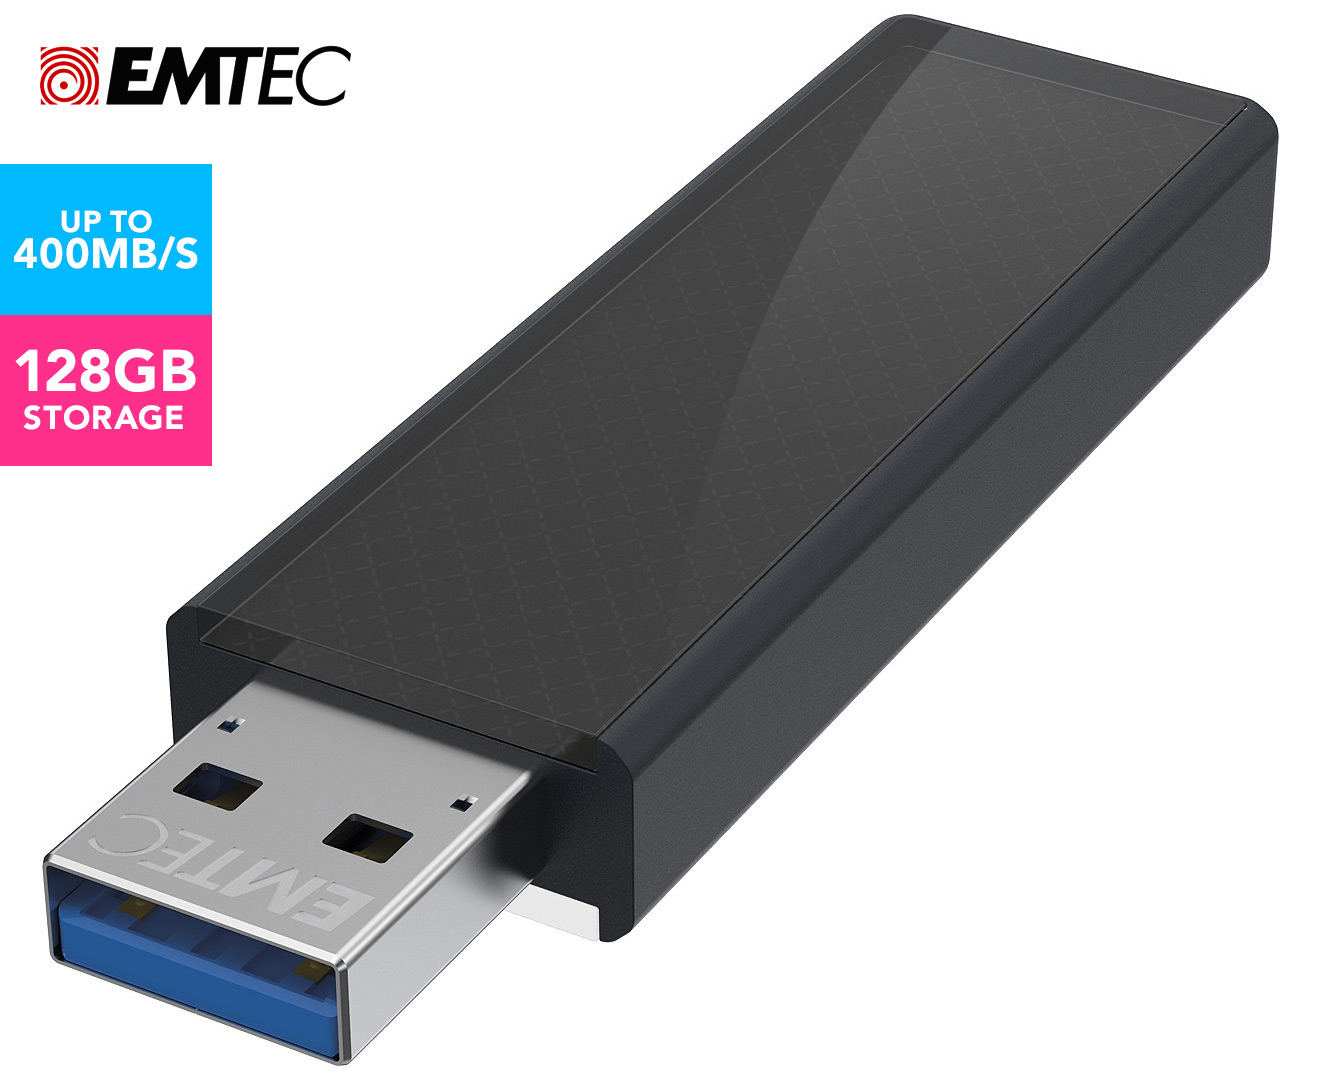 EMTEC SpeedIn High Performance 128GB USB 3.0 Drive